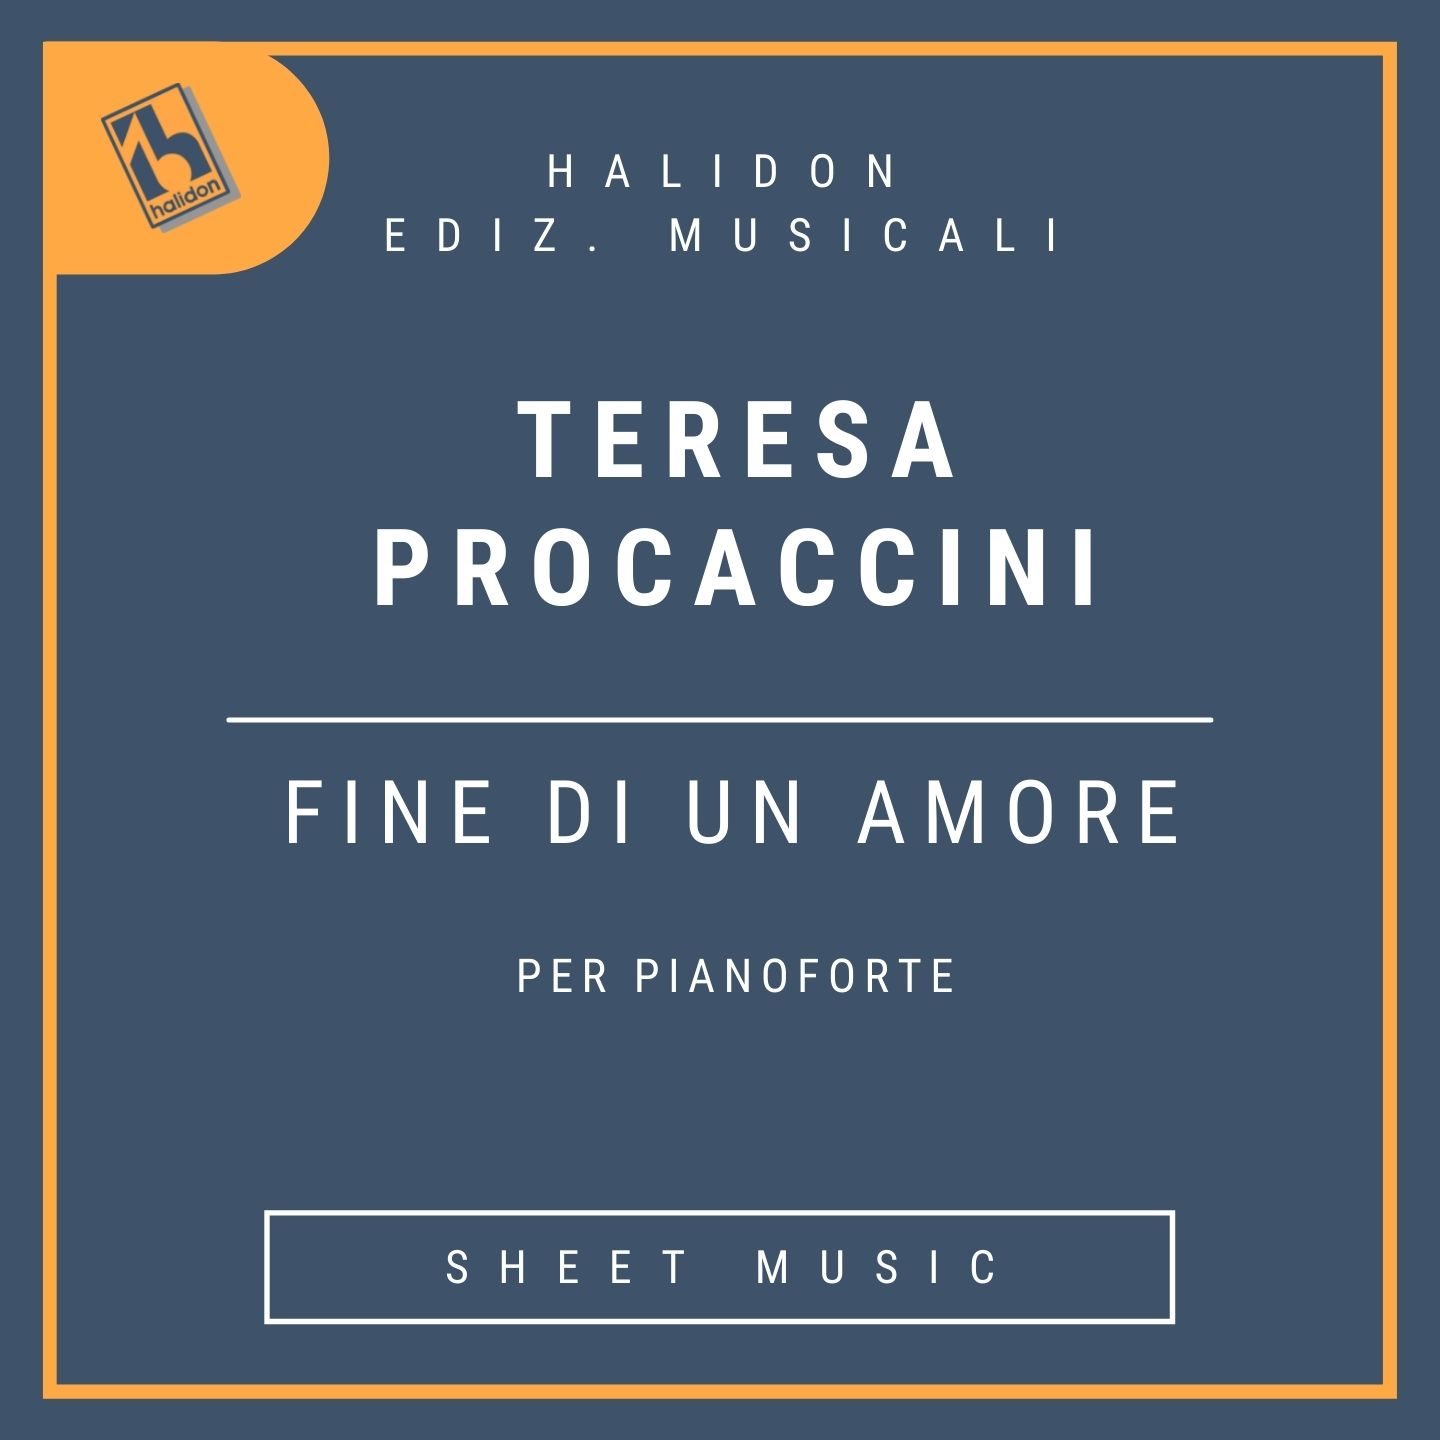 Teresa Procaccini - Fine di un amore